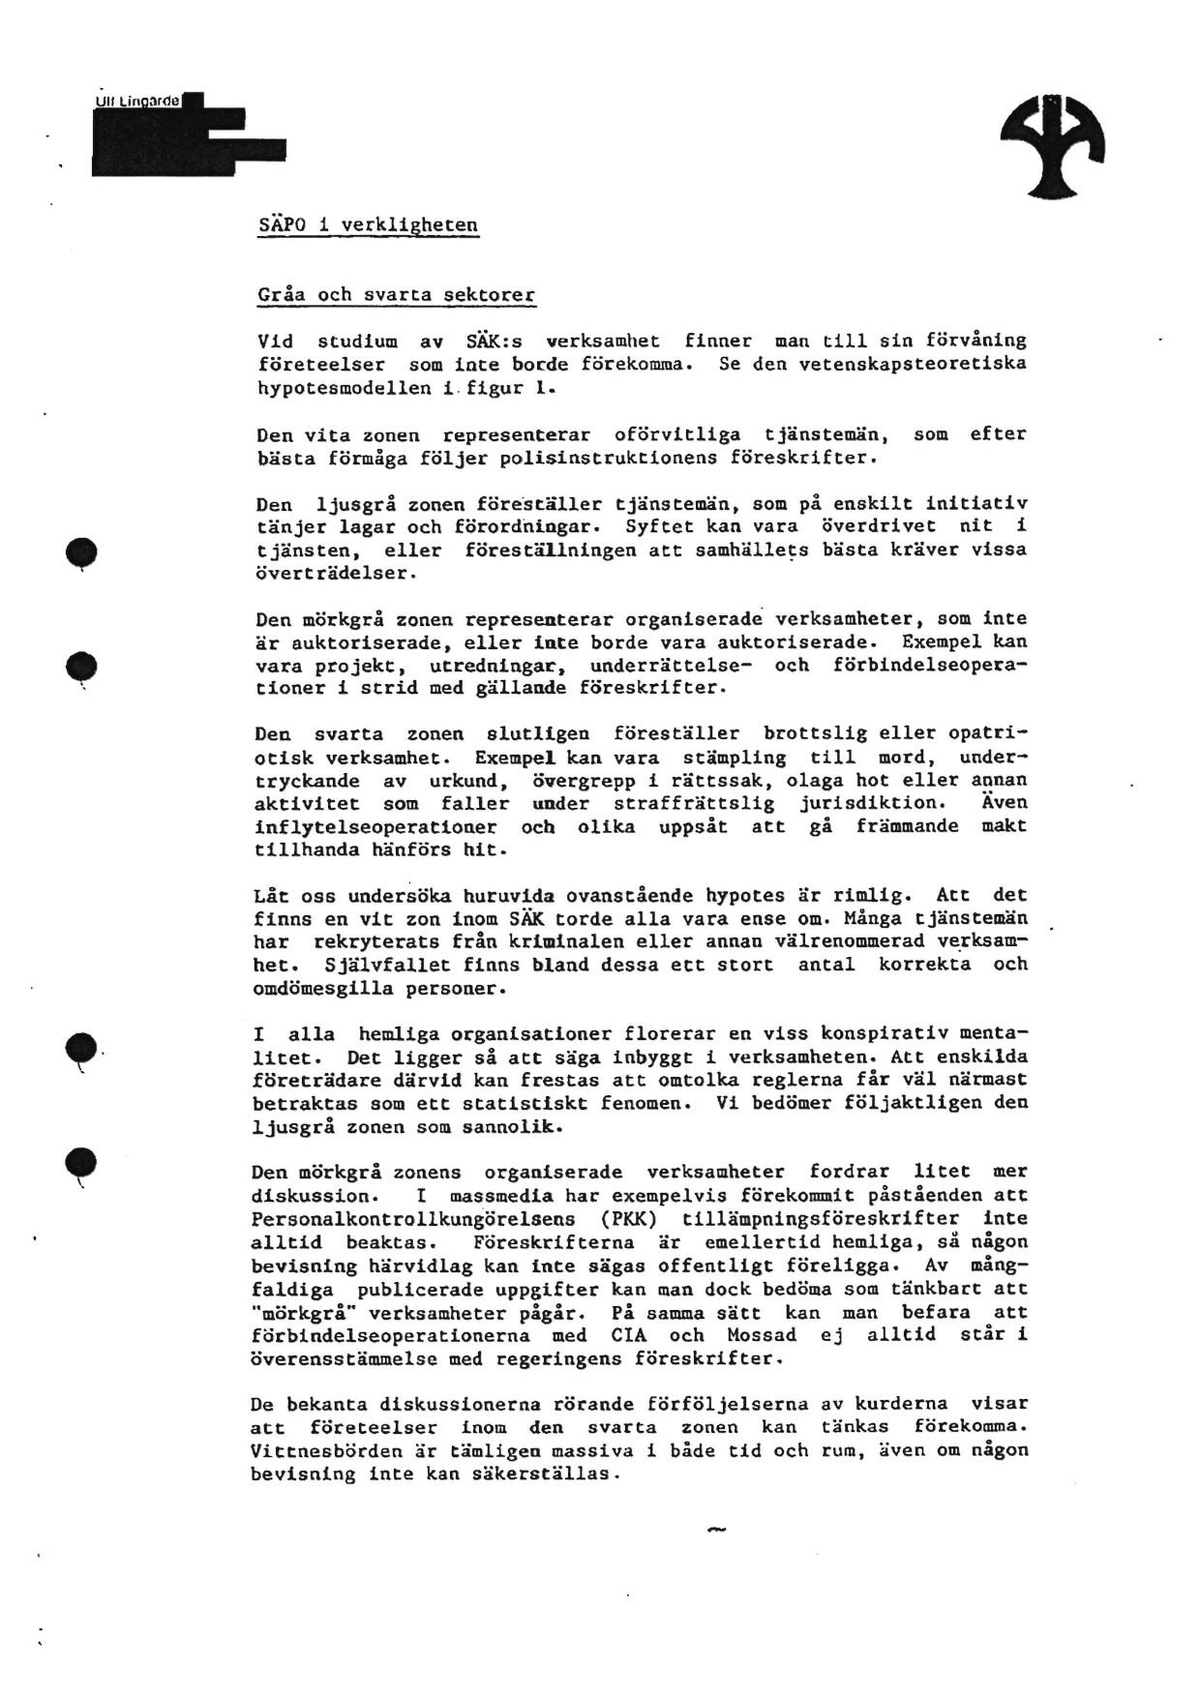 Pol-1989-04-04 D6750-06 Ulf Lingärde.pdf